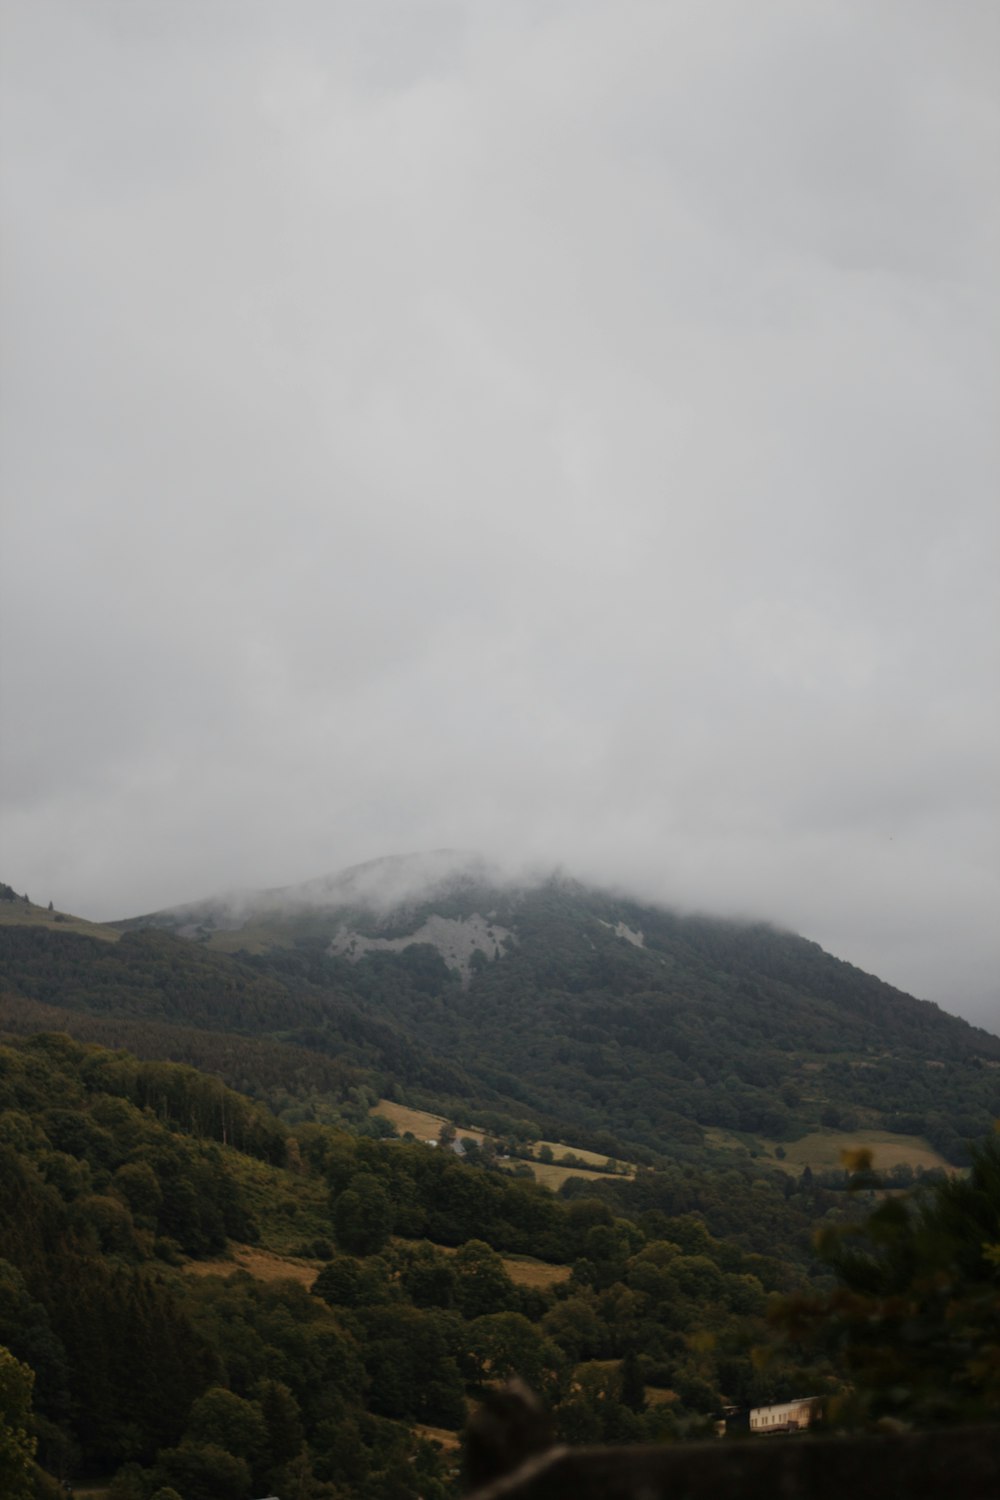 昼間の白い雲の下の緑と茶色の山々